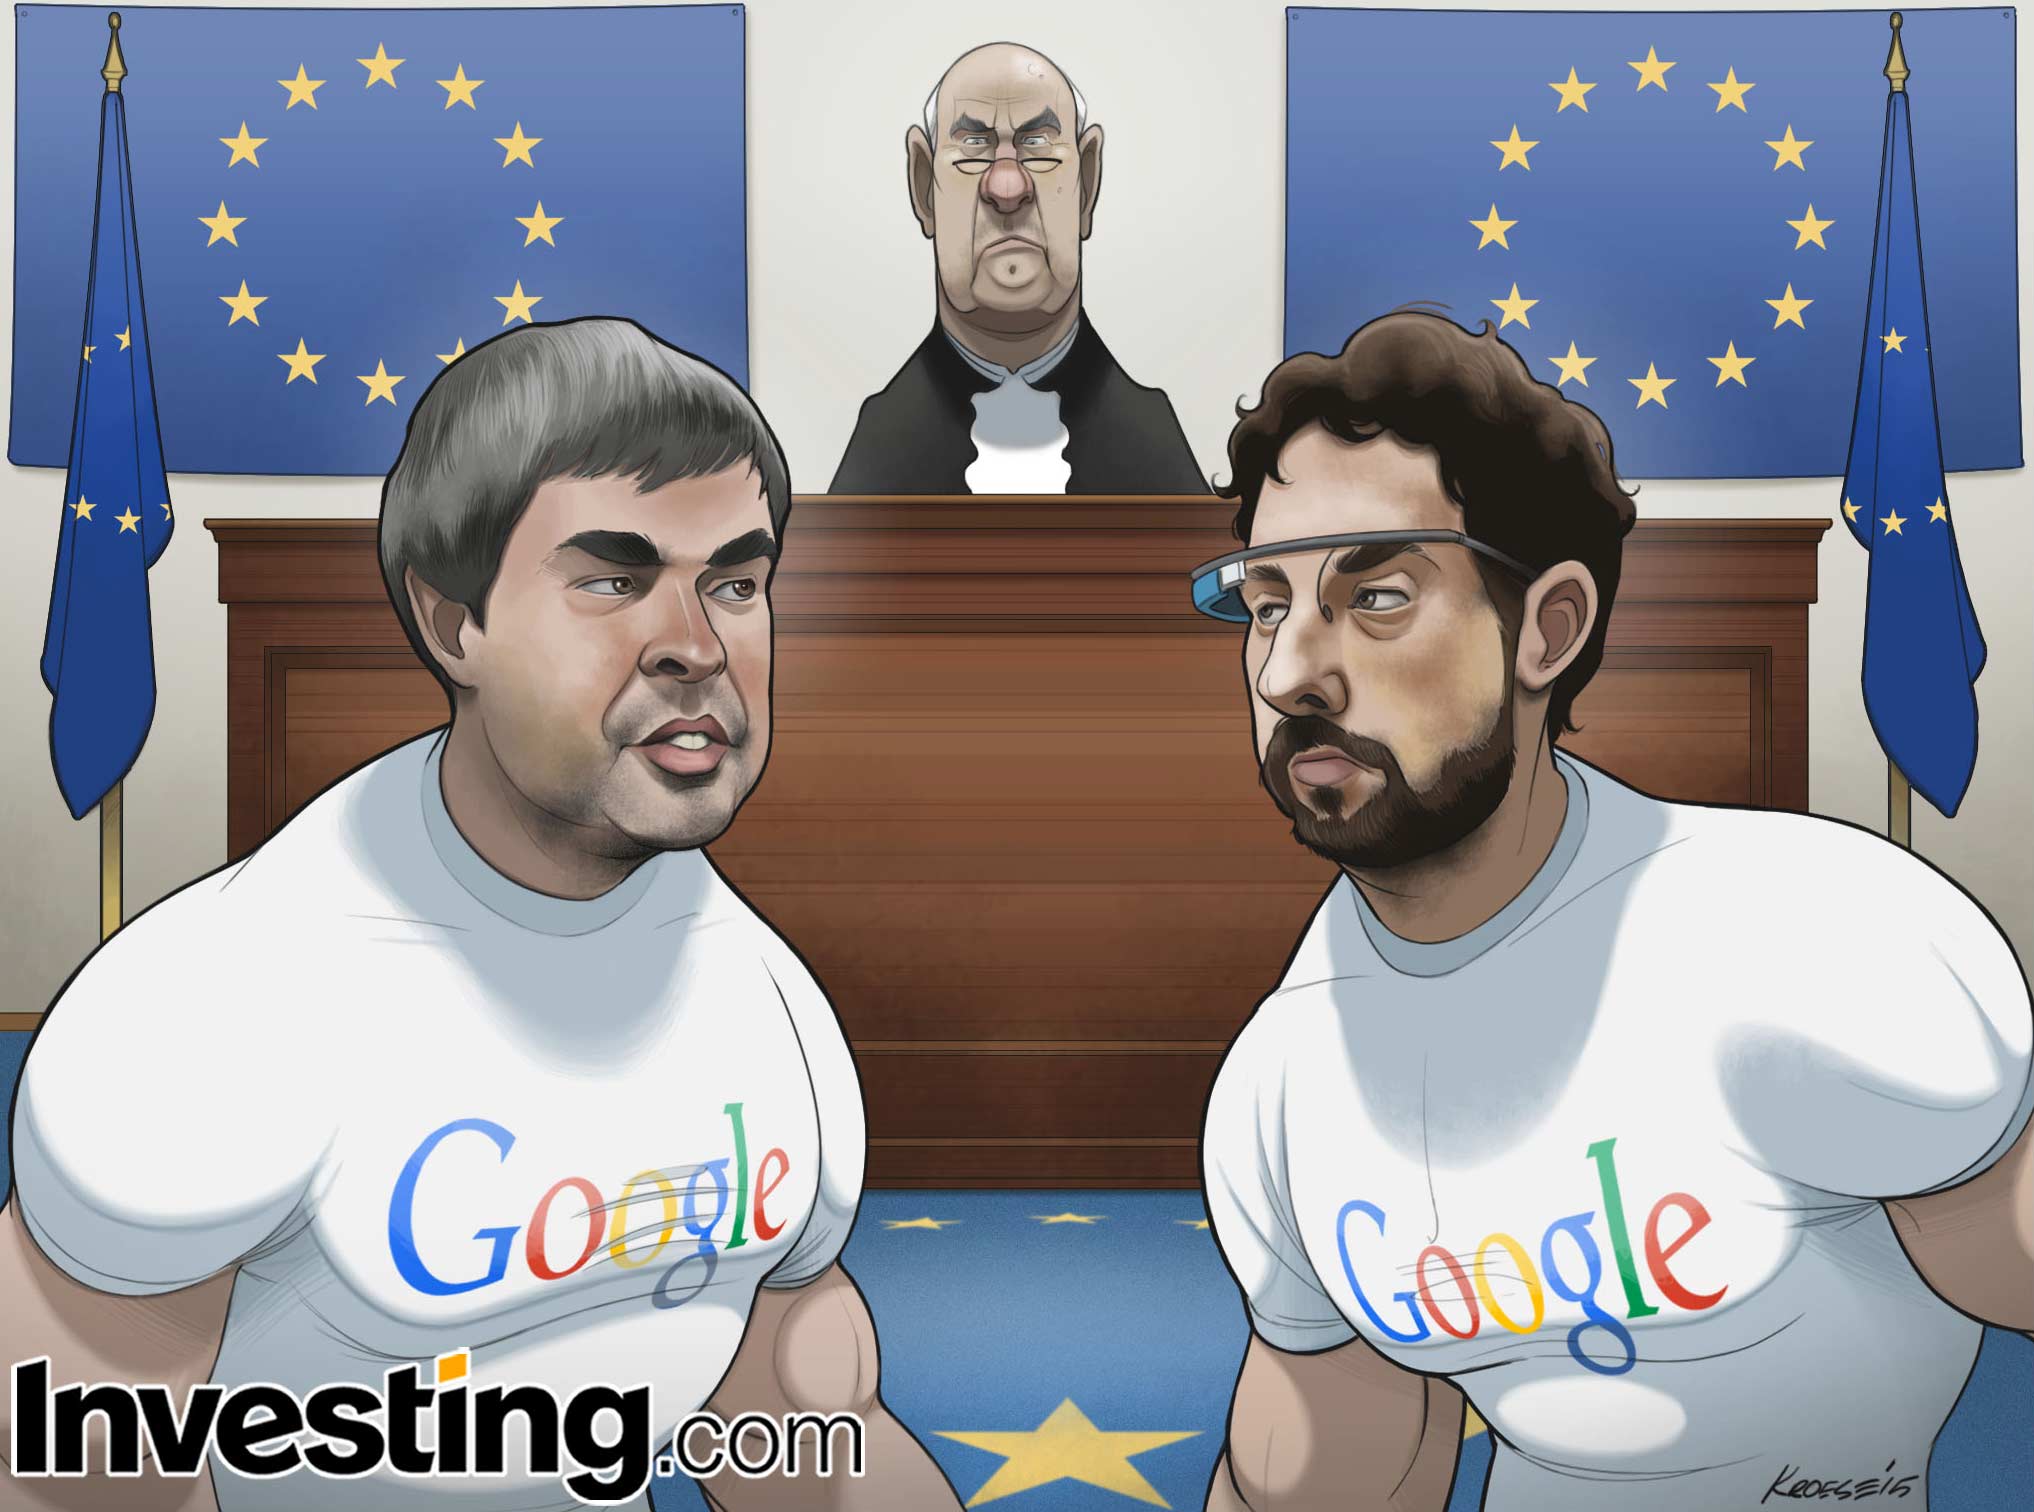 Hoe zullen de anti-trust beschuldigingen van de Europese Unie aan het adres van Google de aandeelkoers van het bedrijf beïnvloeden?